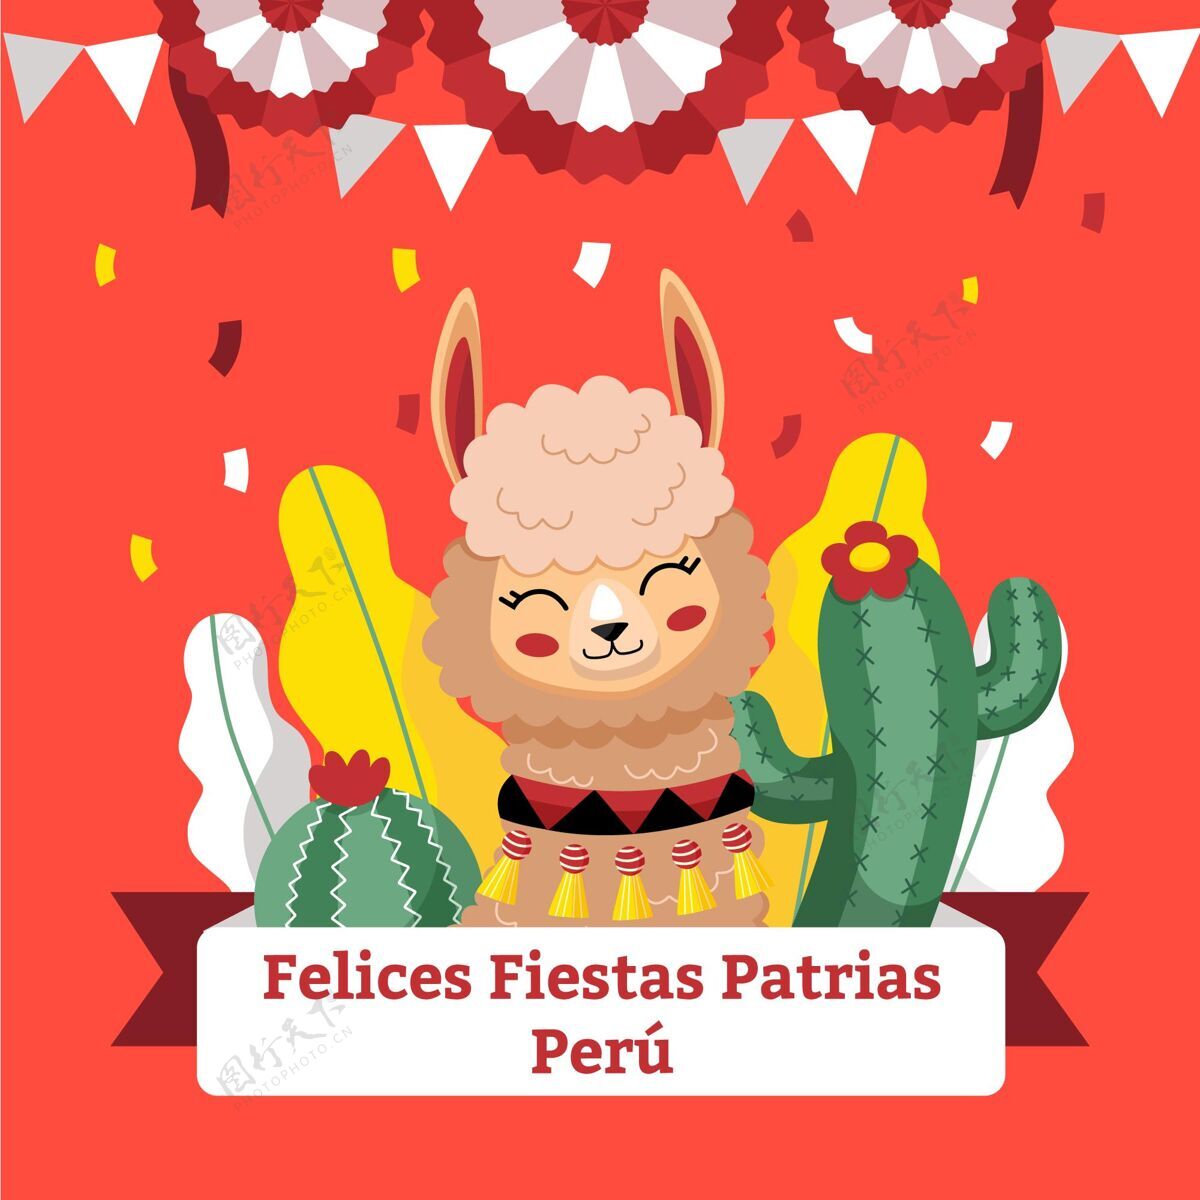 独立平节帕特里亚斯秘鲁插画秘鲁国庆节迪亚拉独立秘鲁